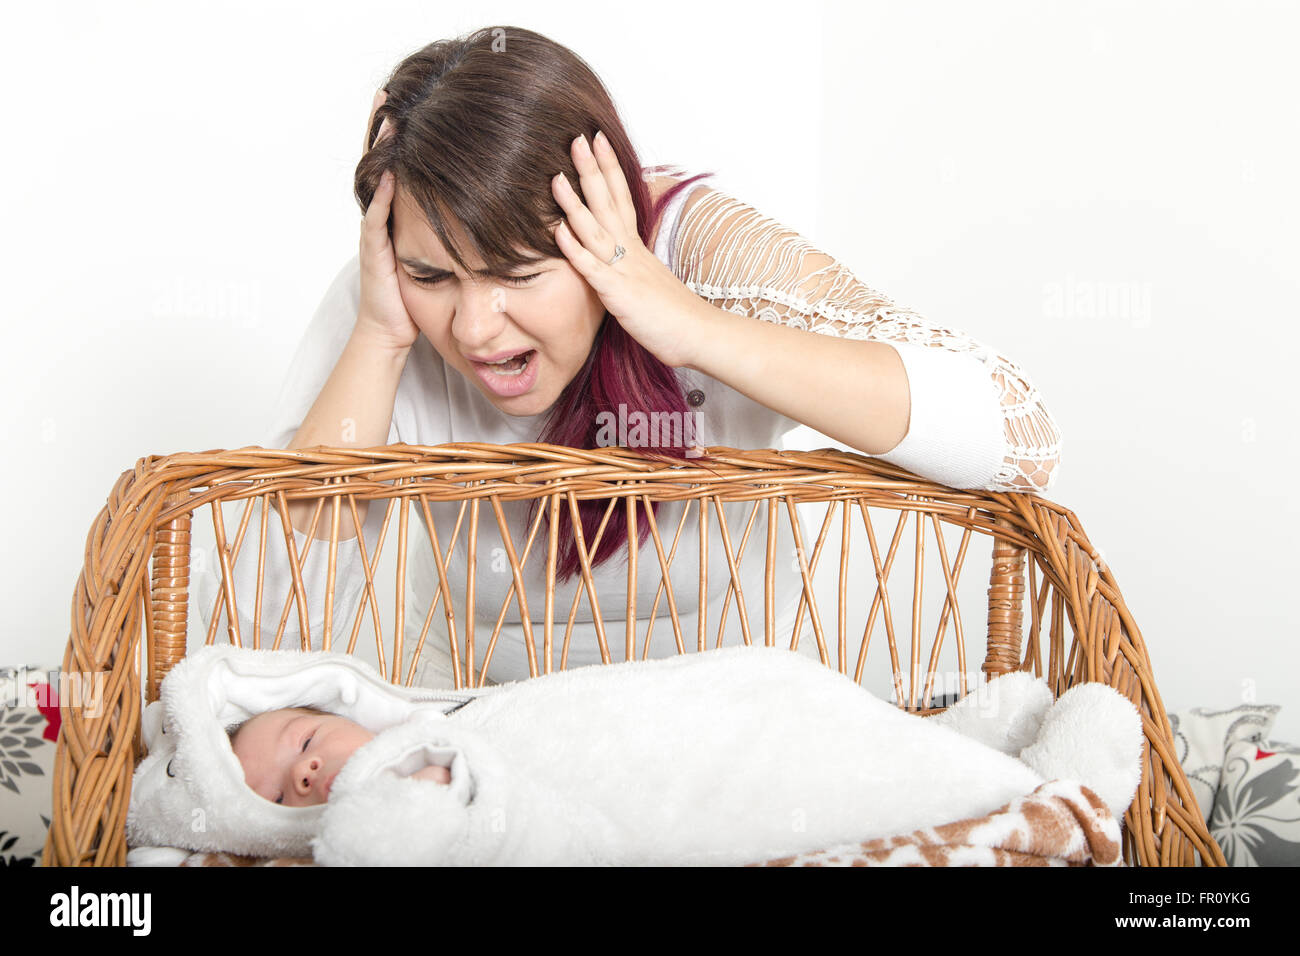 Erschöpfte Mutter verärgert Baby leiden mit Post-Natal-Depression. Mutter hält ihr Baby betont. Frau mit Gesichtsausdruck Stockfoto